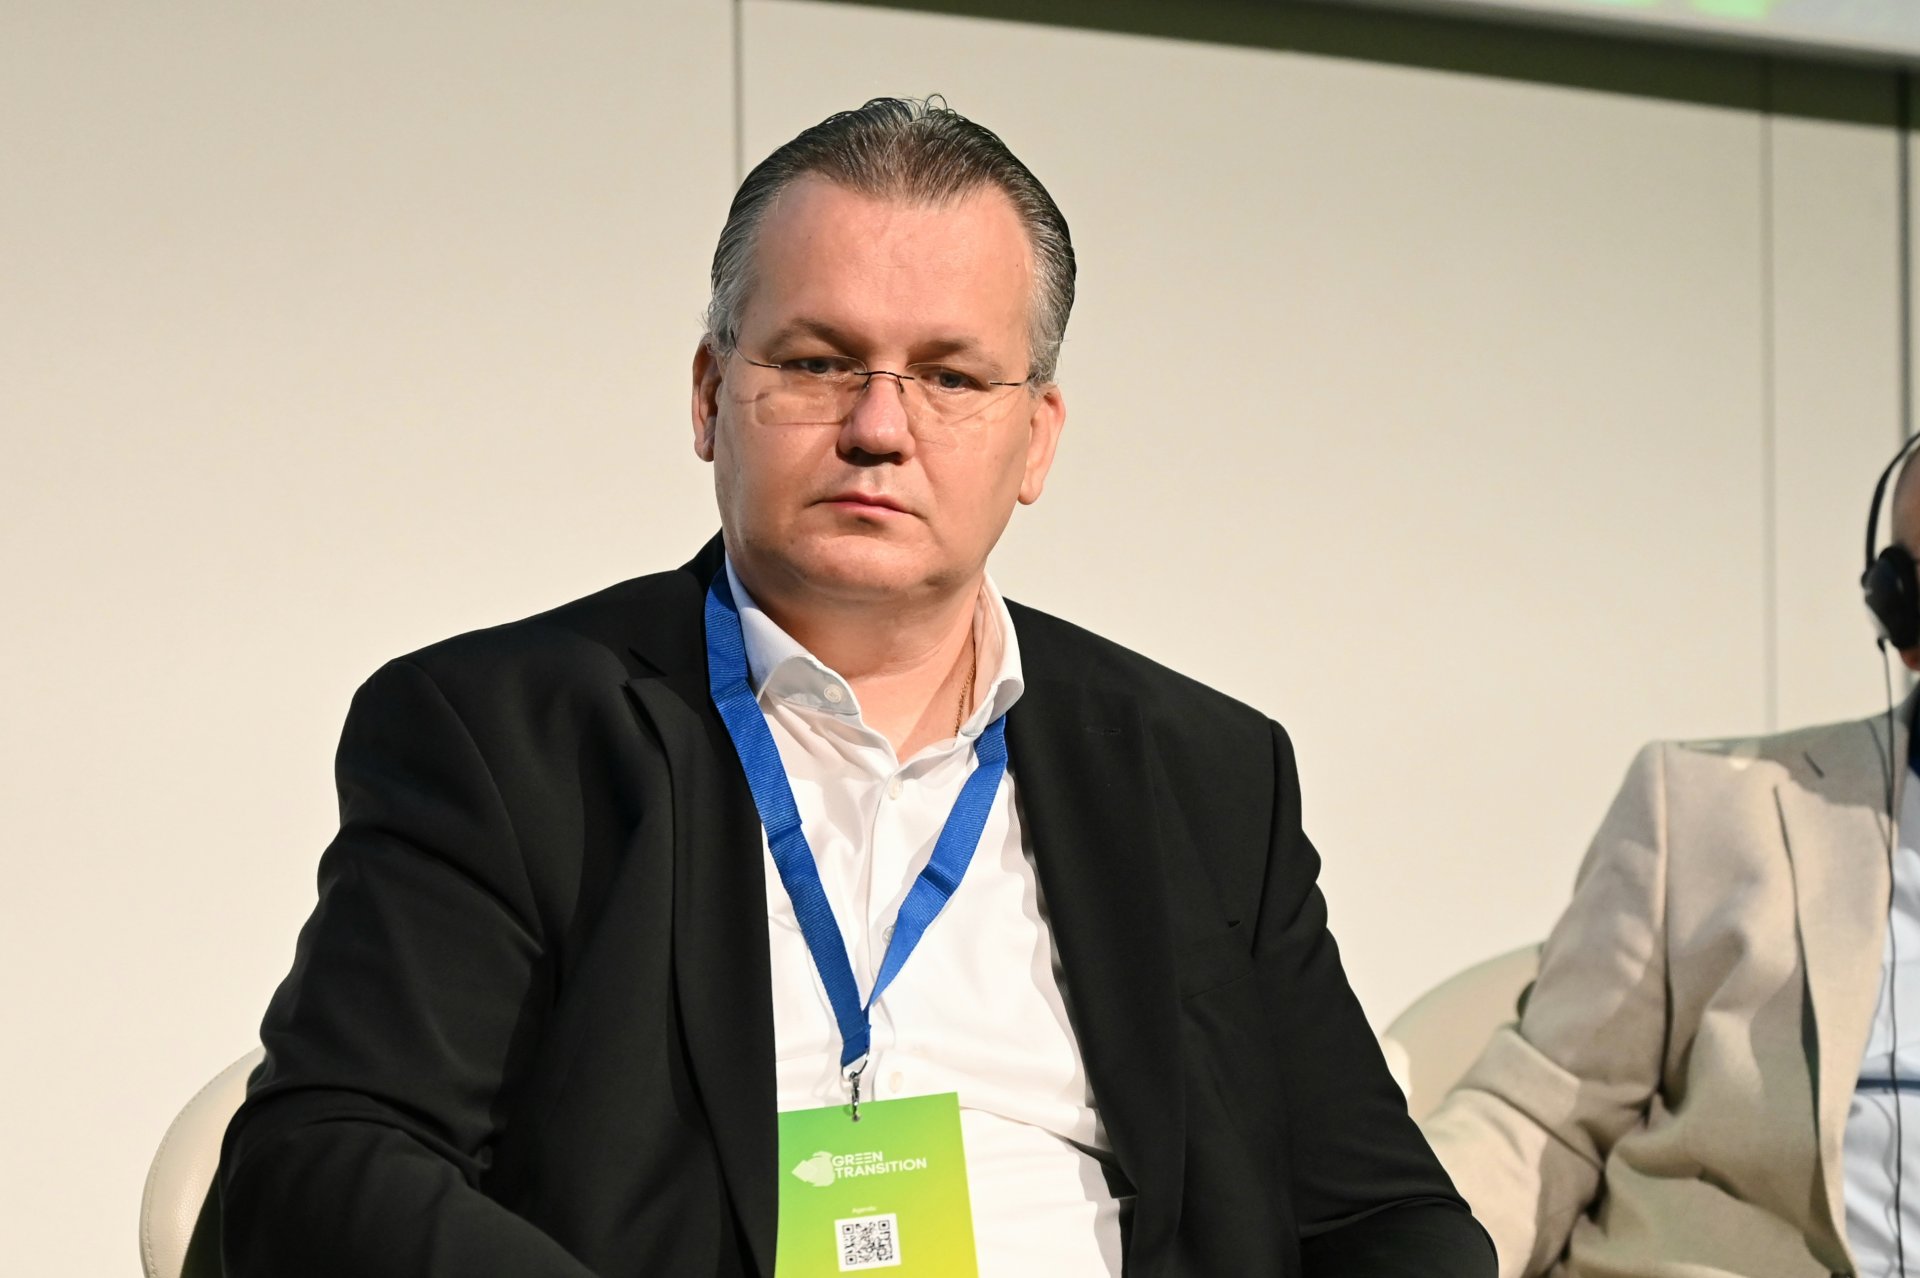 Модератор на панела бе Любомир Станиславов, изпълнителен директор на "Аутомотив клъстер" - България